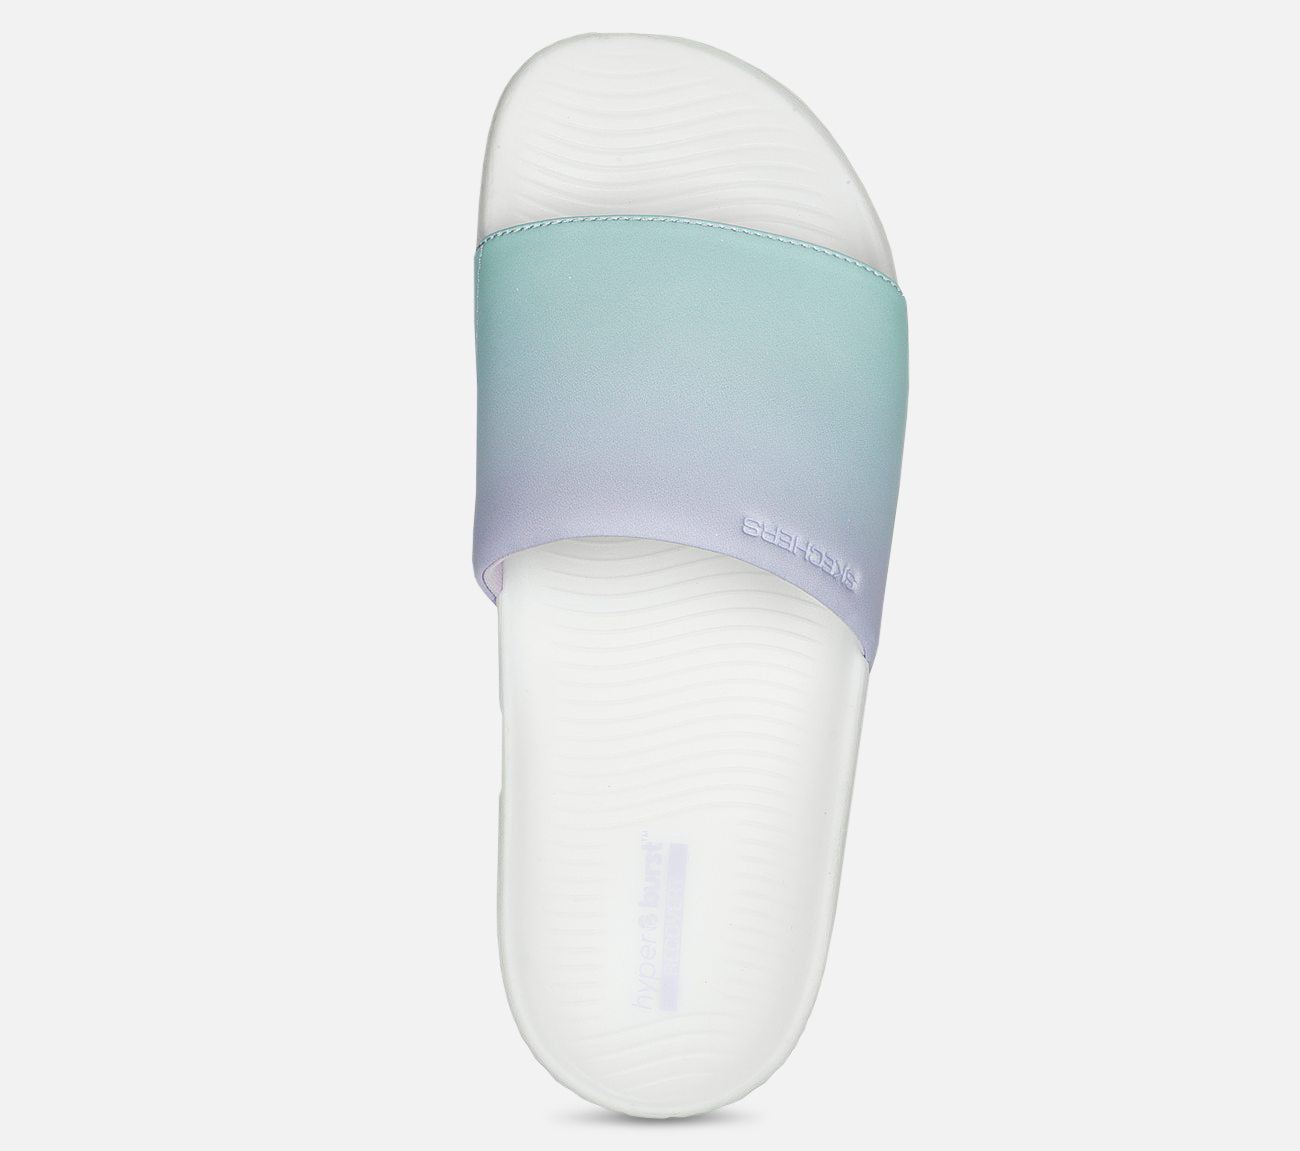 Hyper Slide - Summer Dreams Sandal Skechers